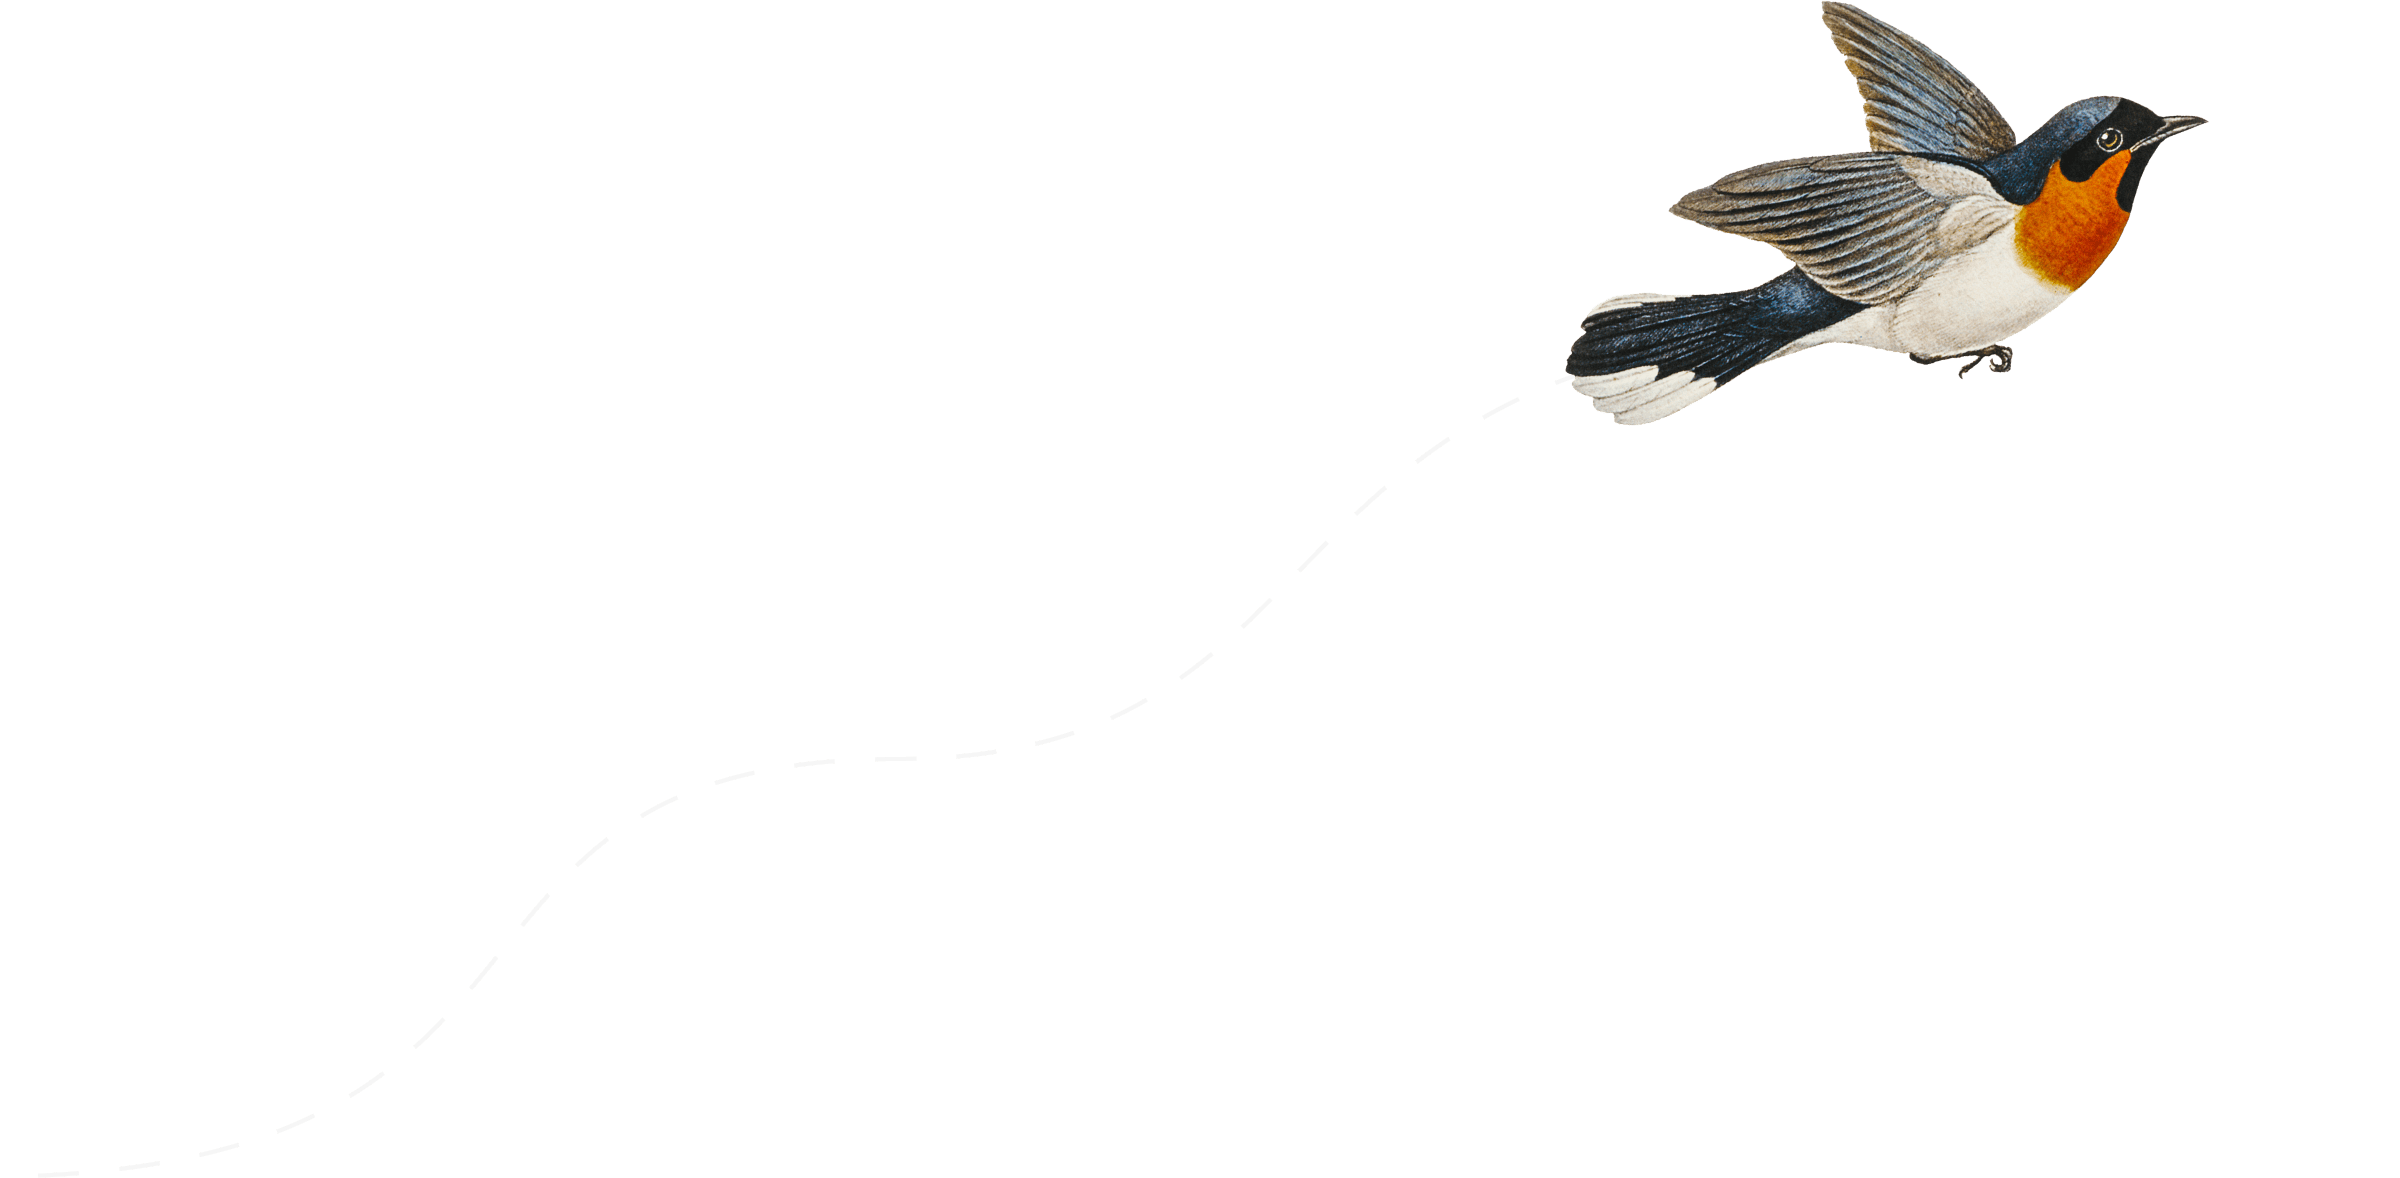 Una ilustración de un pájaro en vuelo